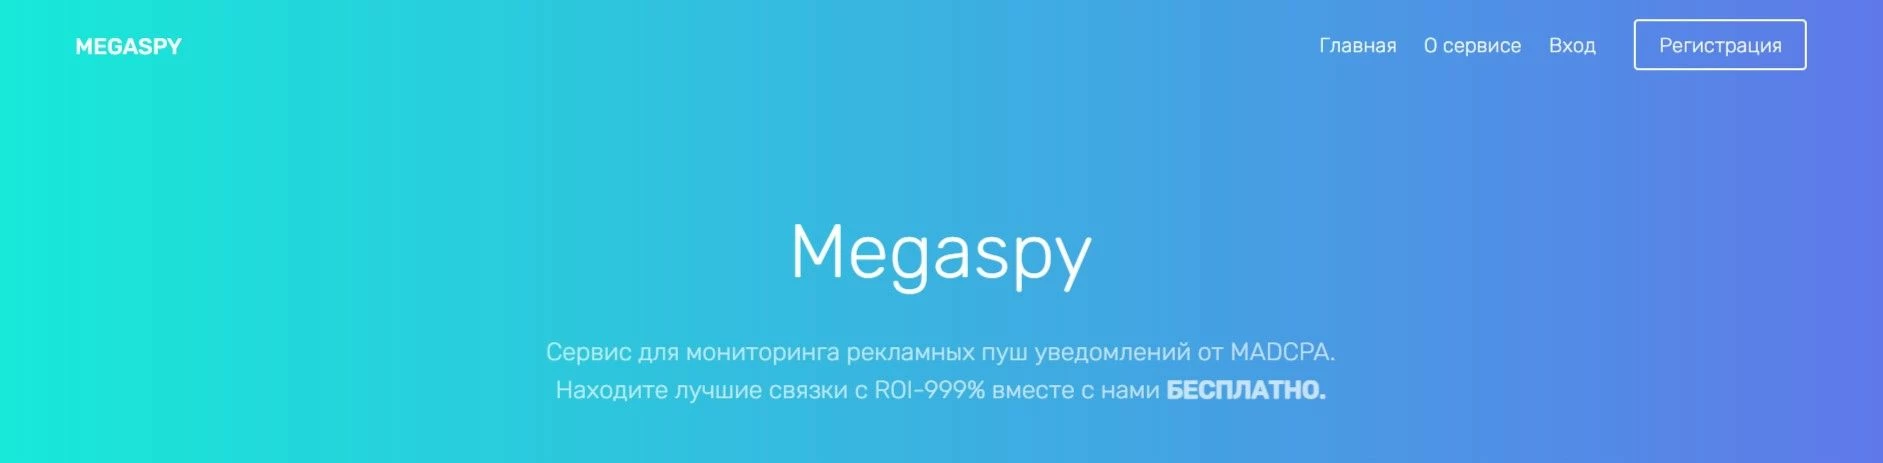 Главная страница Megaspy